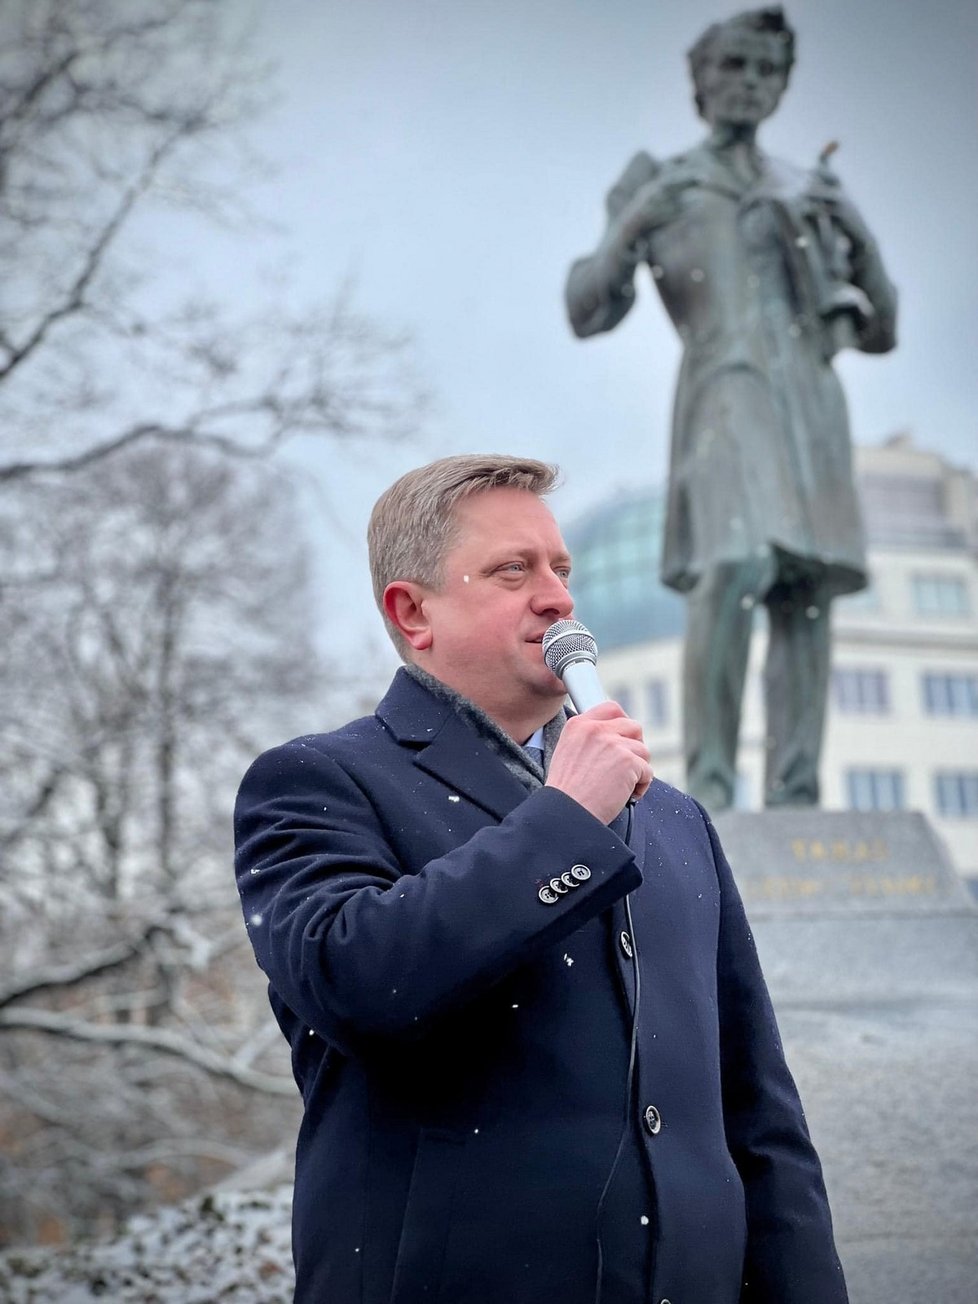 Novým velvyslancem Ukrajiny v Praze by se měl stát Vasyl Zvaryč